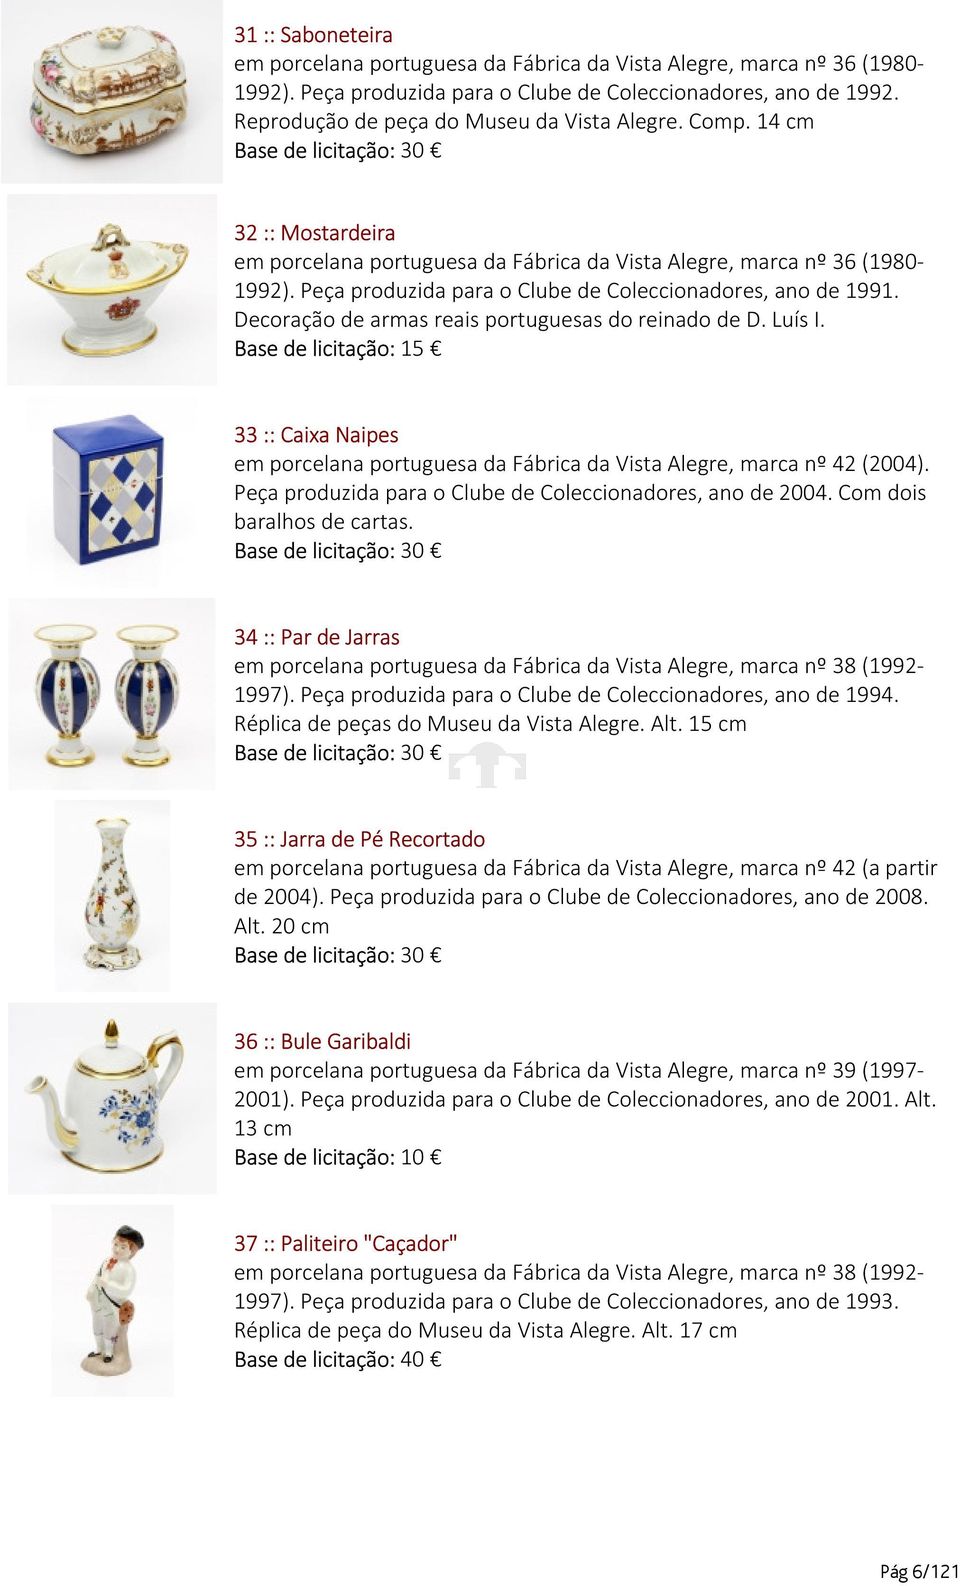 Decoração de armas reais portuguesas do reinado de D. Luís I. 33 :: Caixa Naipes em porcelana portuguesa da Fábrica da Vista Alegre, marca nº 42 (2004).